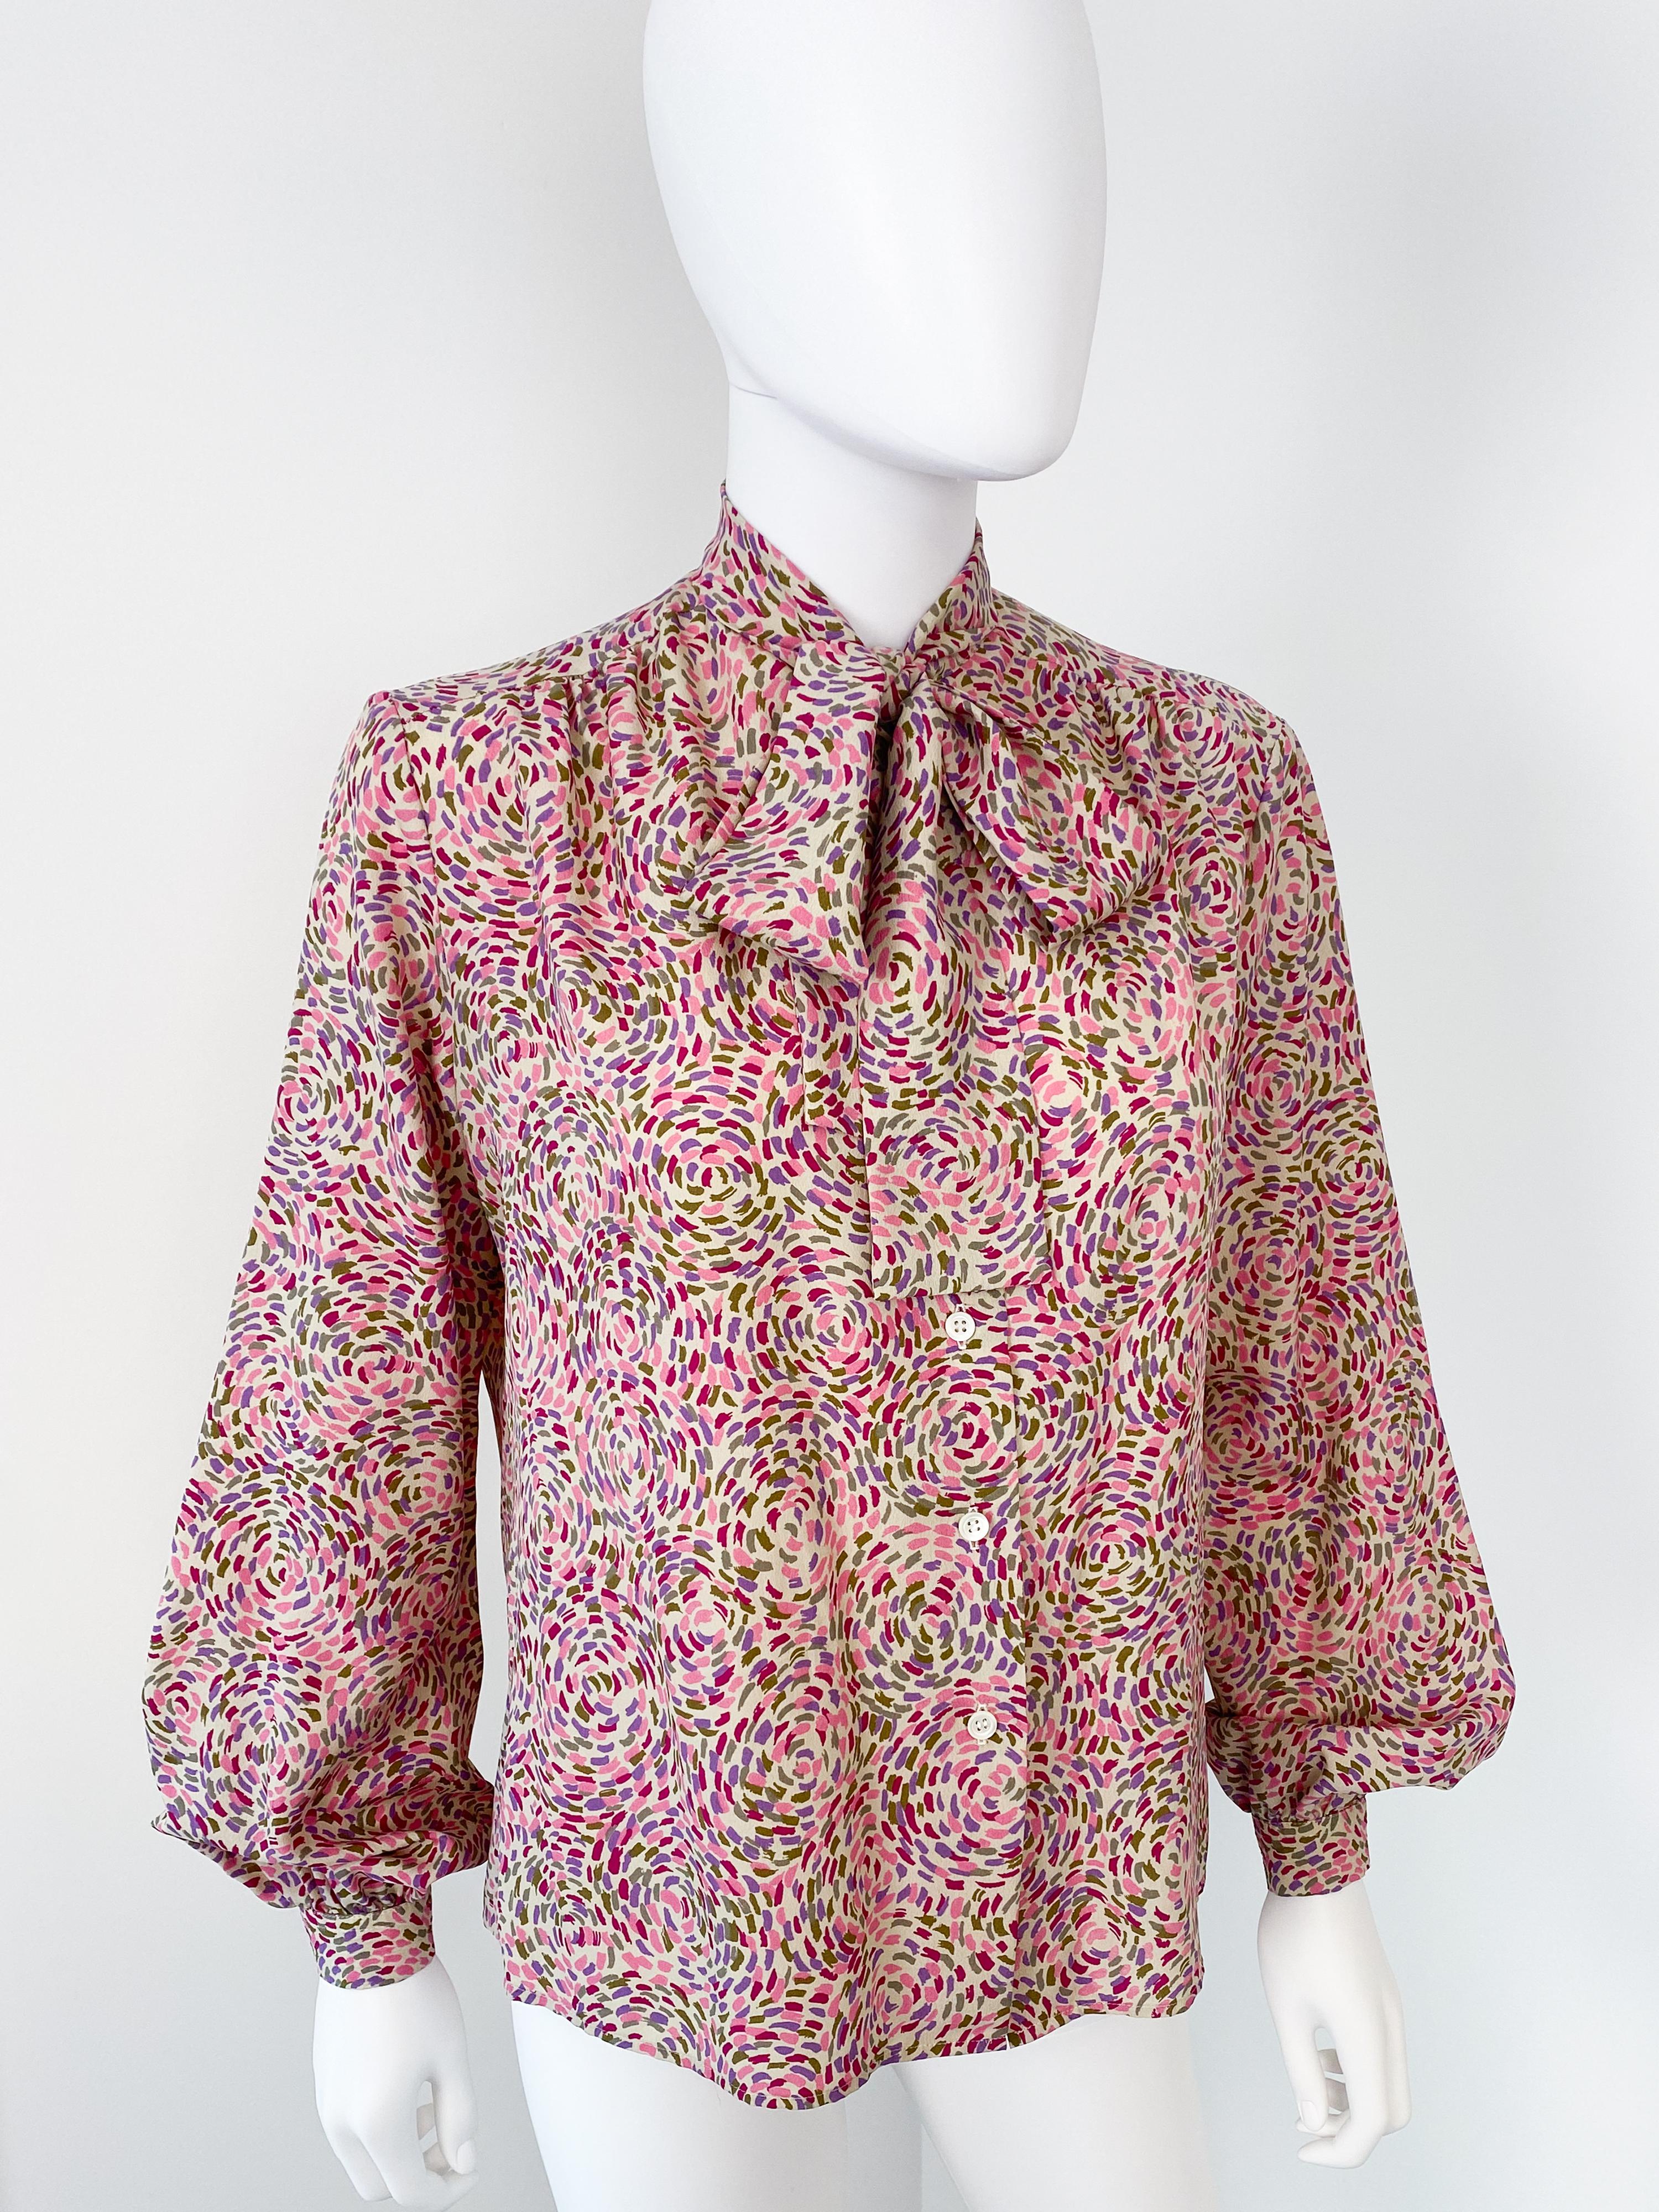 Magnifique blouse vintage des années 1980 en polyester soyeux avec nœud papillon et cravate d'origine. Motif imprimé en pointillisme de couleurs rose, violet, bordeaux et vert sur un fond blanc cassé. Les manches longues se dessinent avec des plis